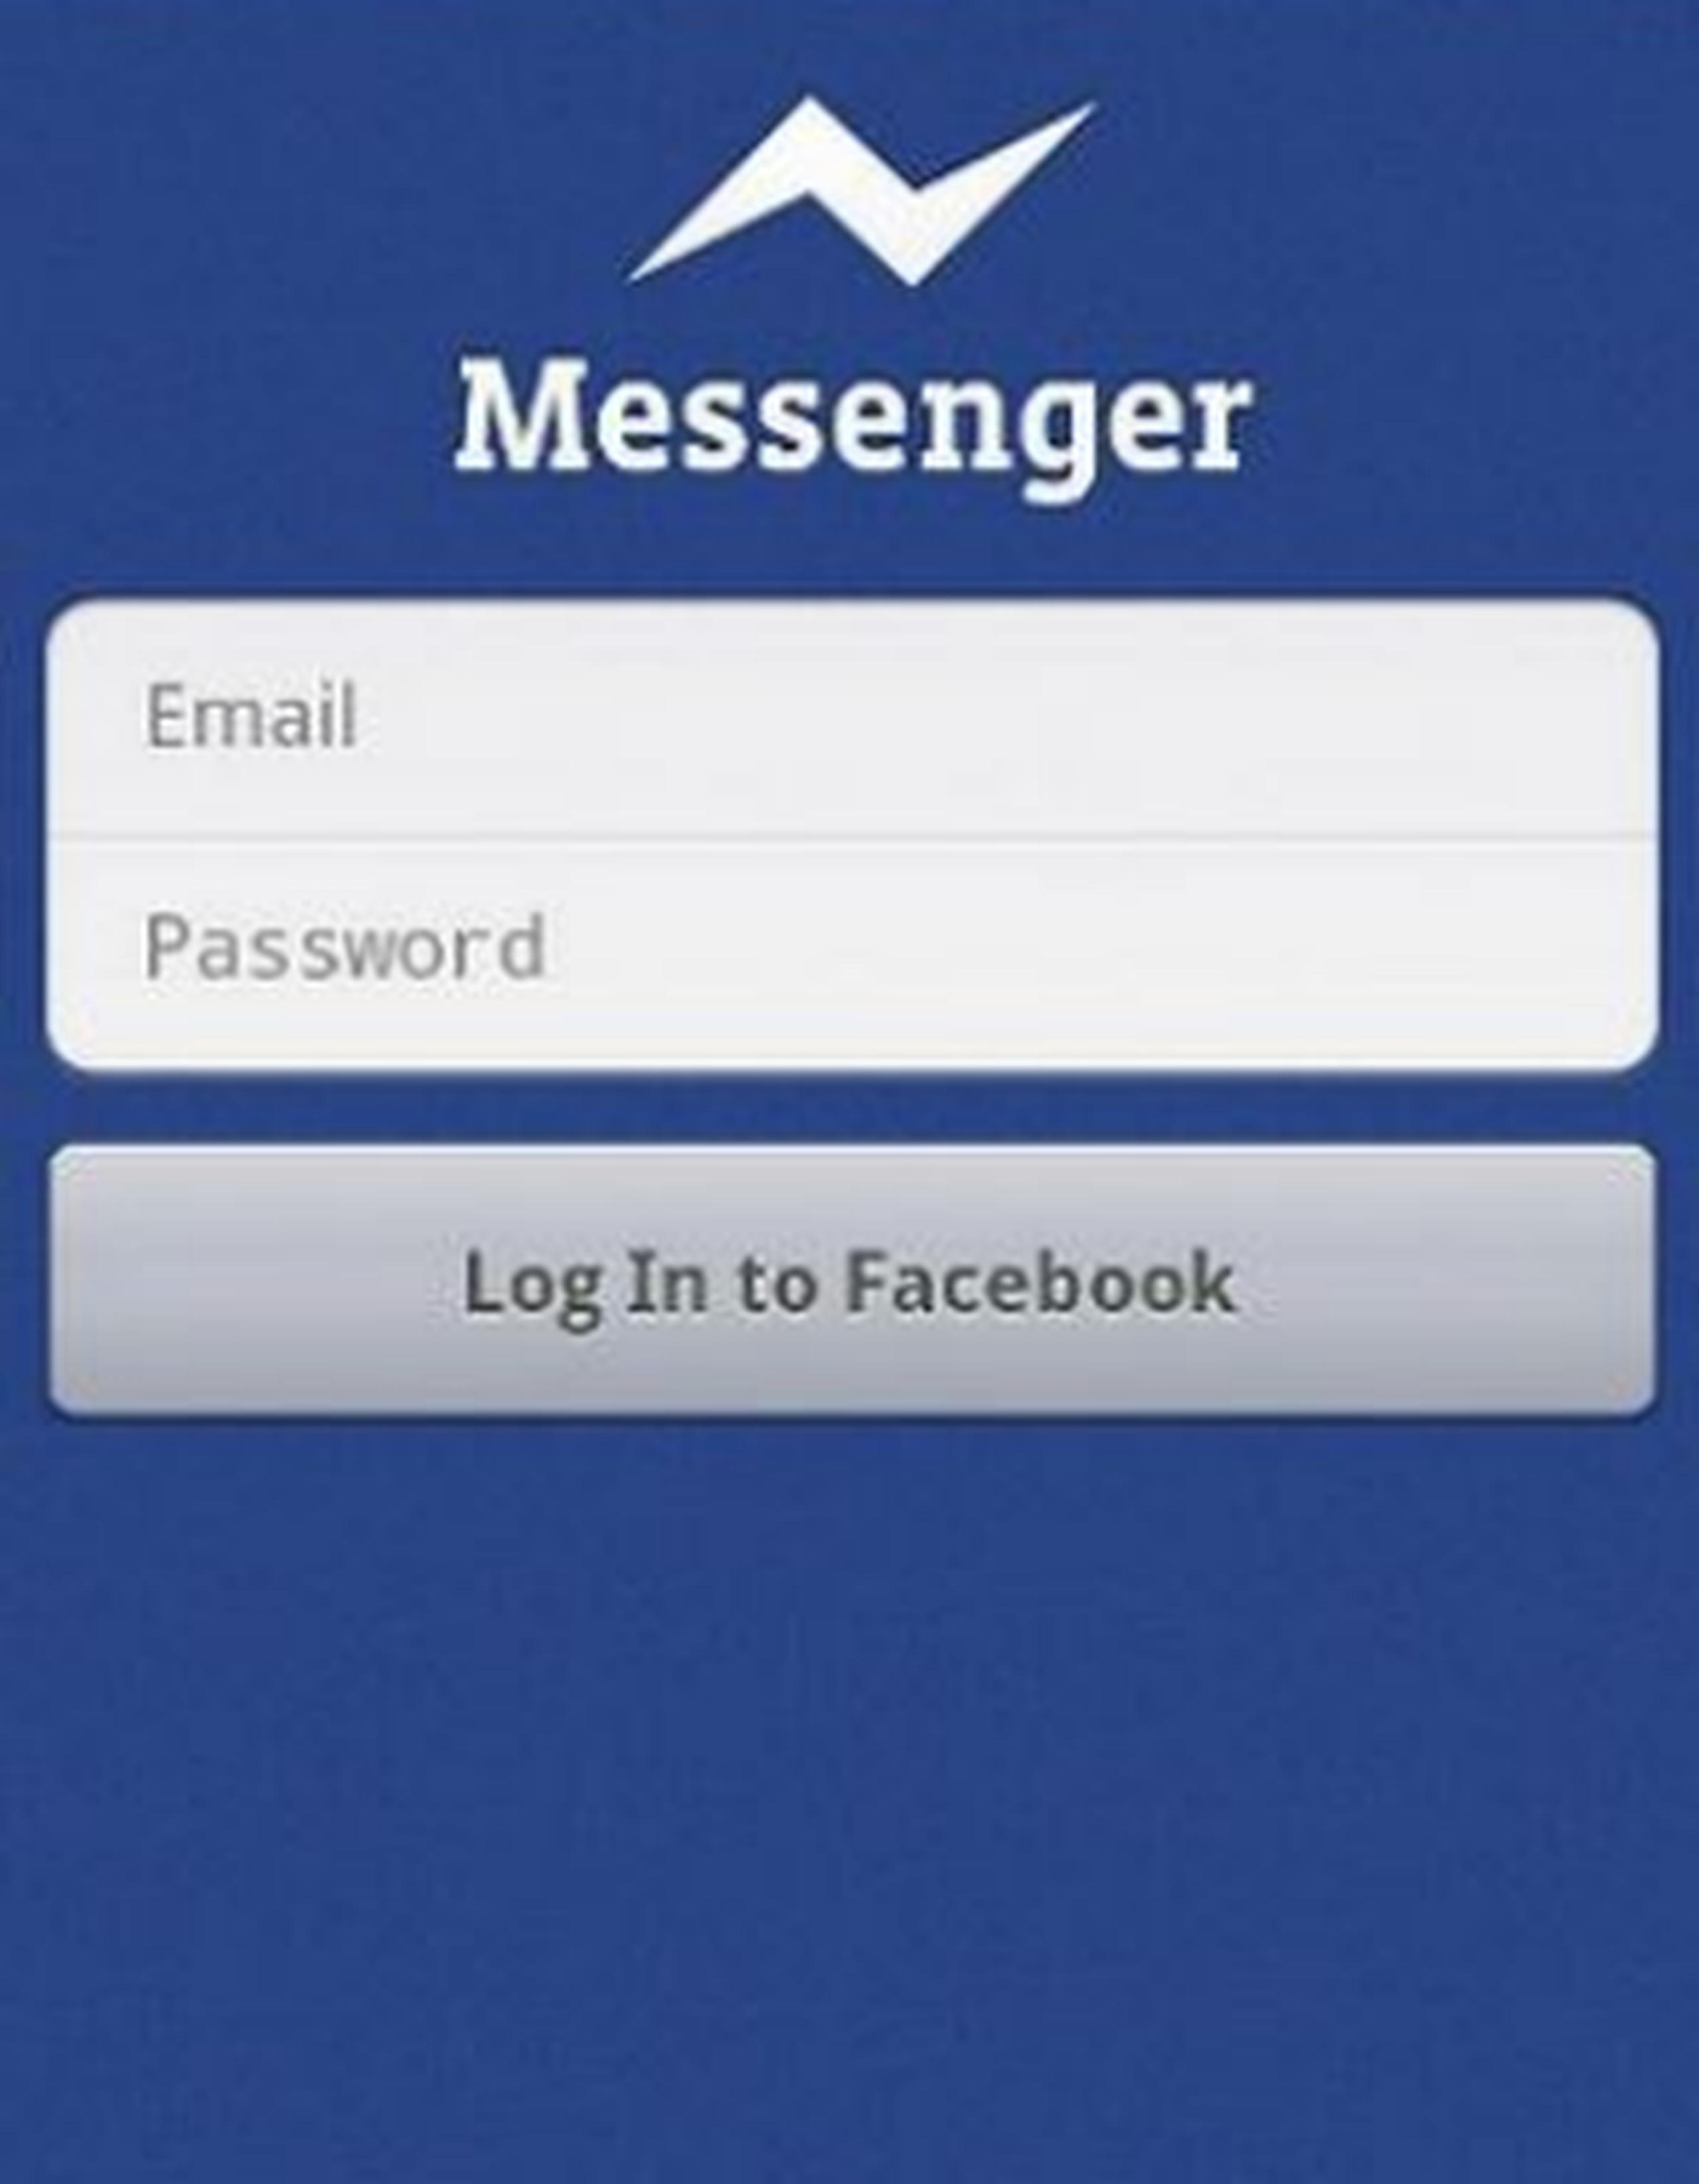 El botón de mensajería se mantendrá en la aplicación pero pulsarlo llevará a "Messenger" o a la tienda de aplicaciones correspondiente para descargarla. (Captura)